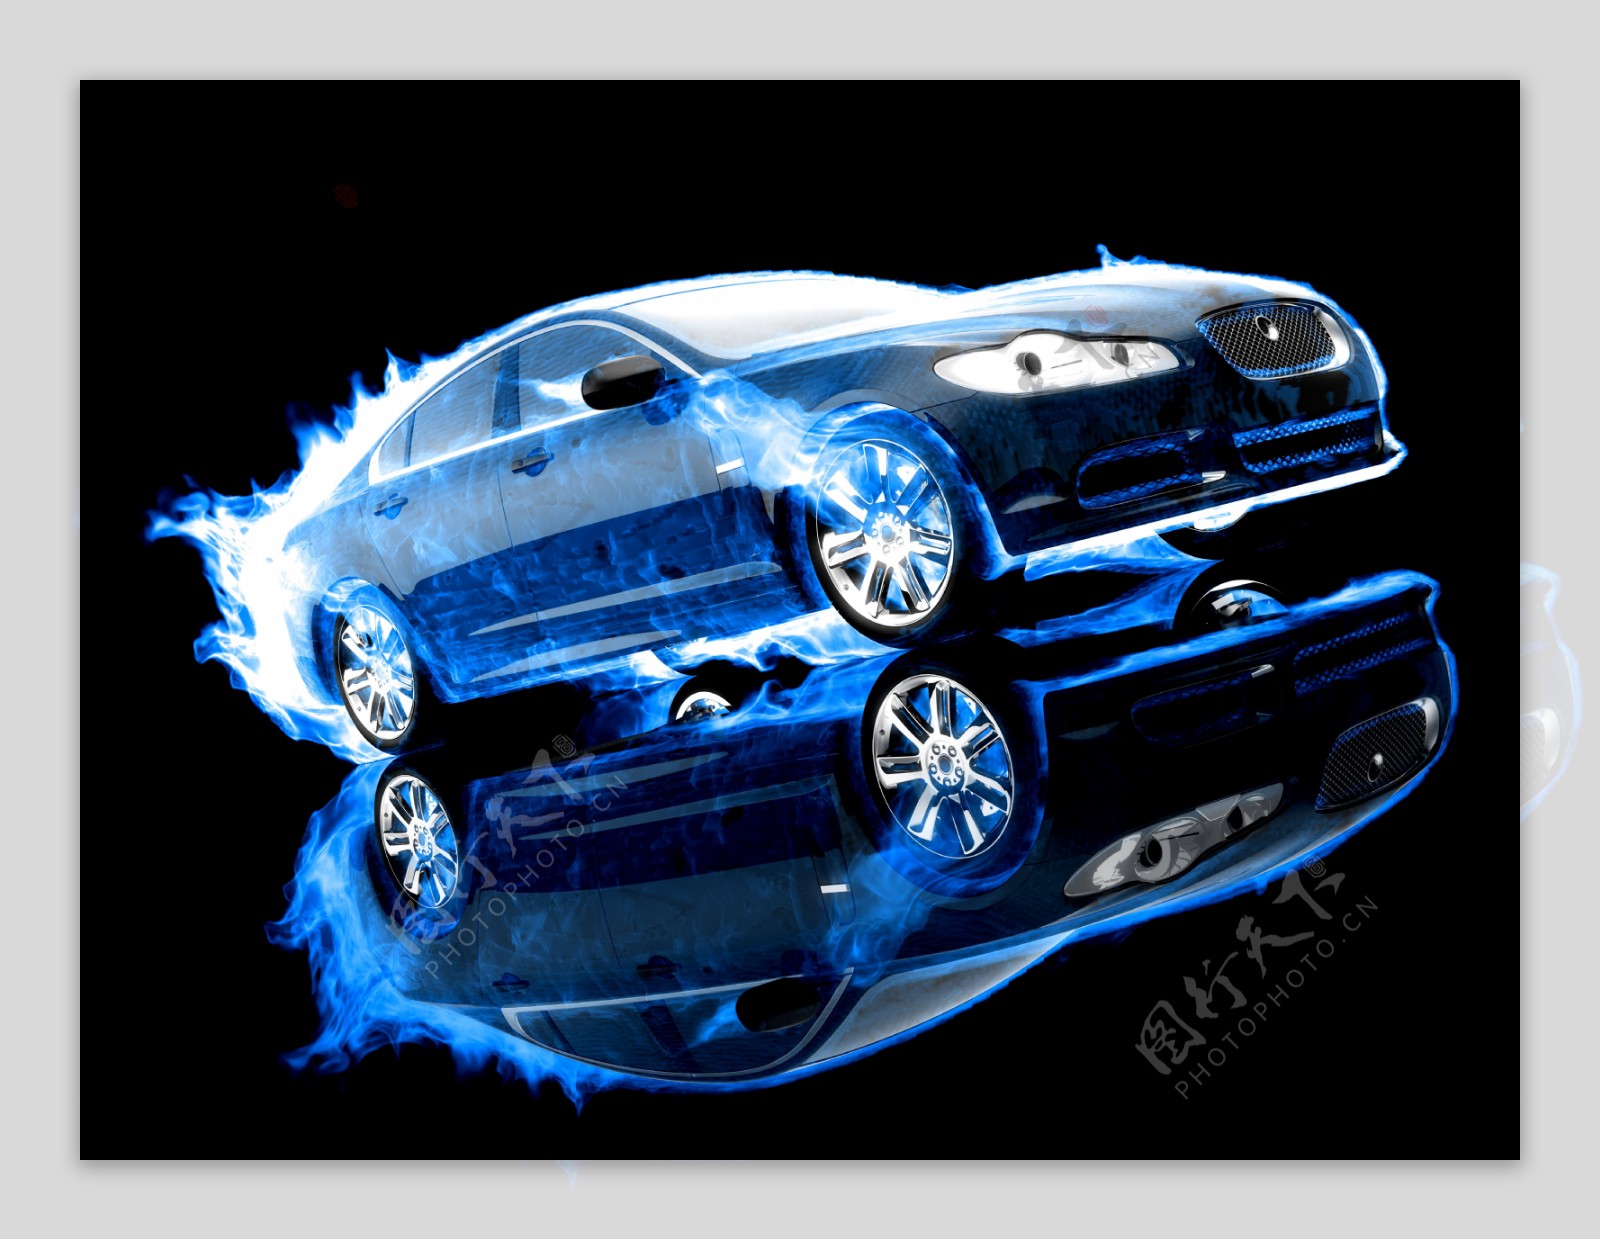 蓝色火焰汽车图片